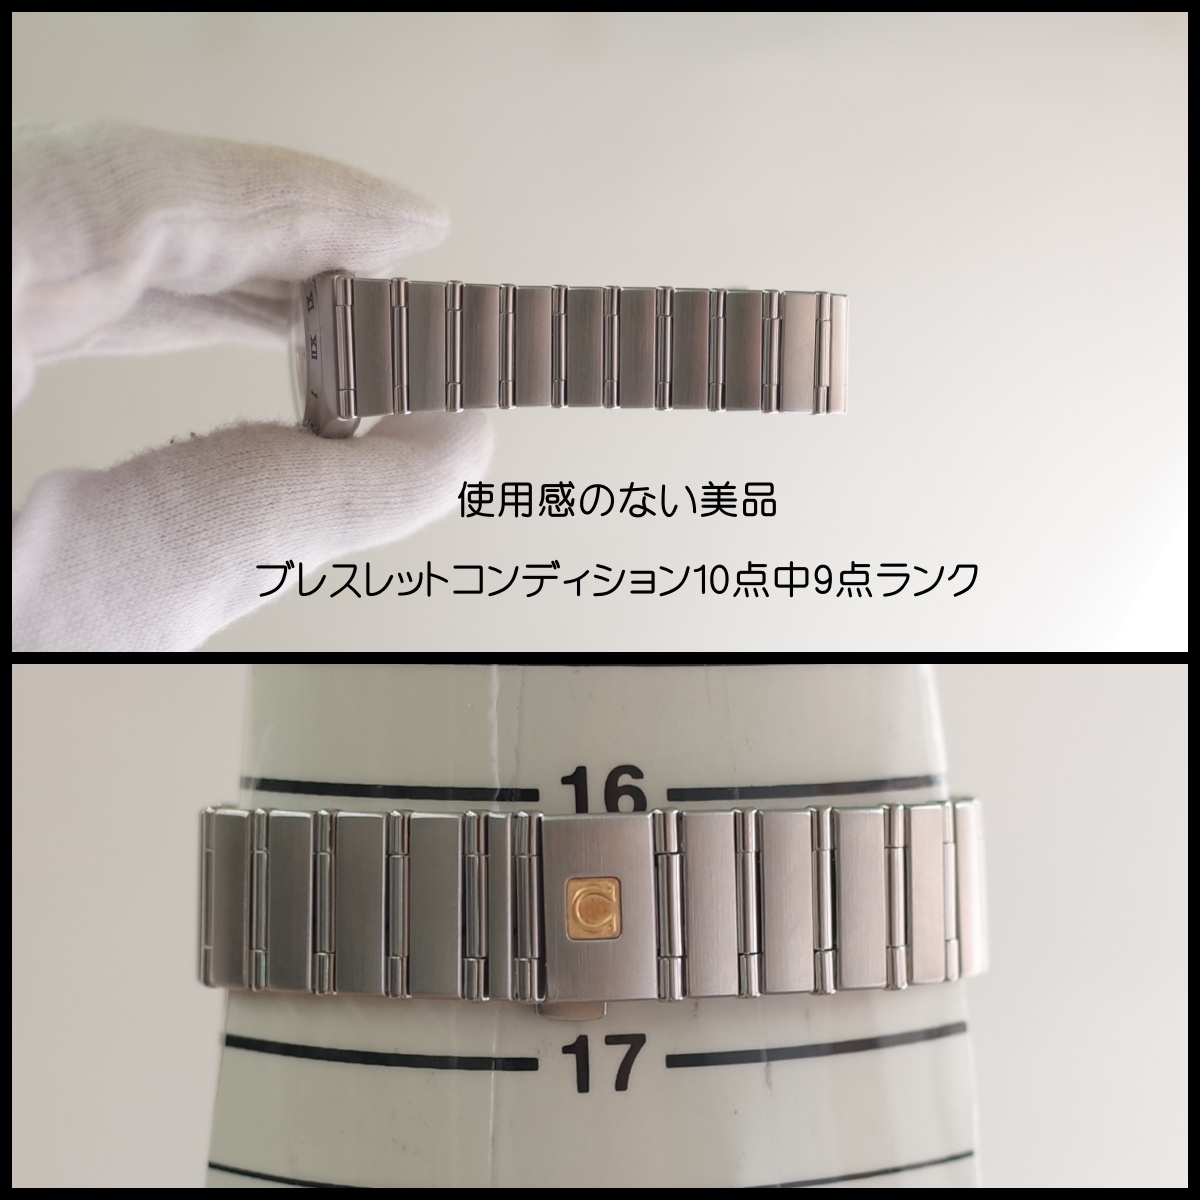 美品 オメガ コンステレーション SS1572.30 クォーツ レディース 腕時計 一年保証 OH済